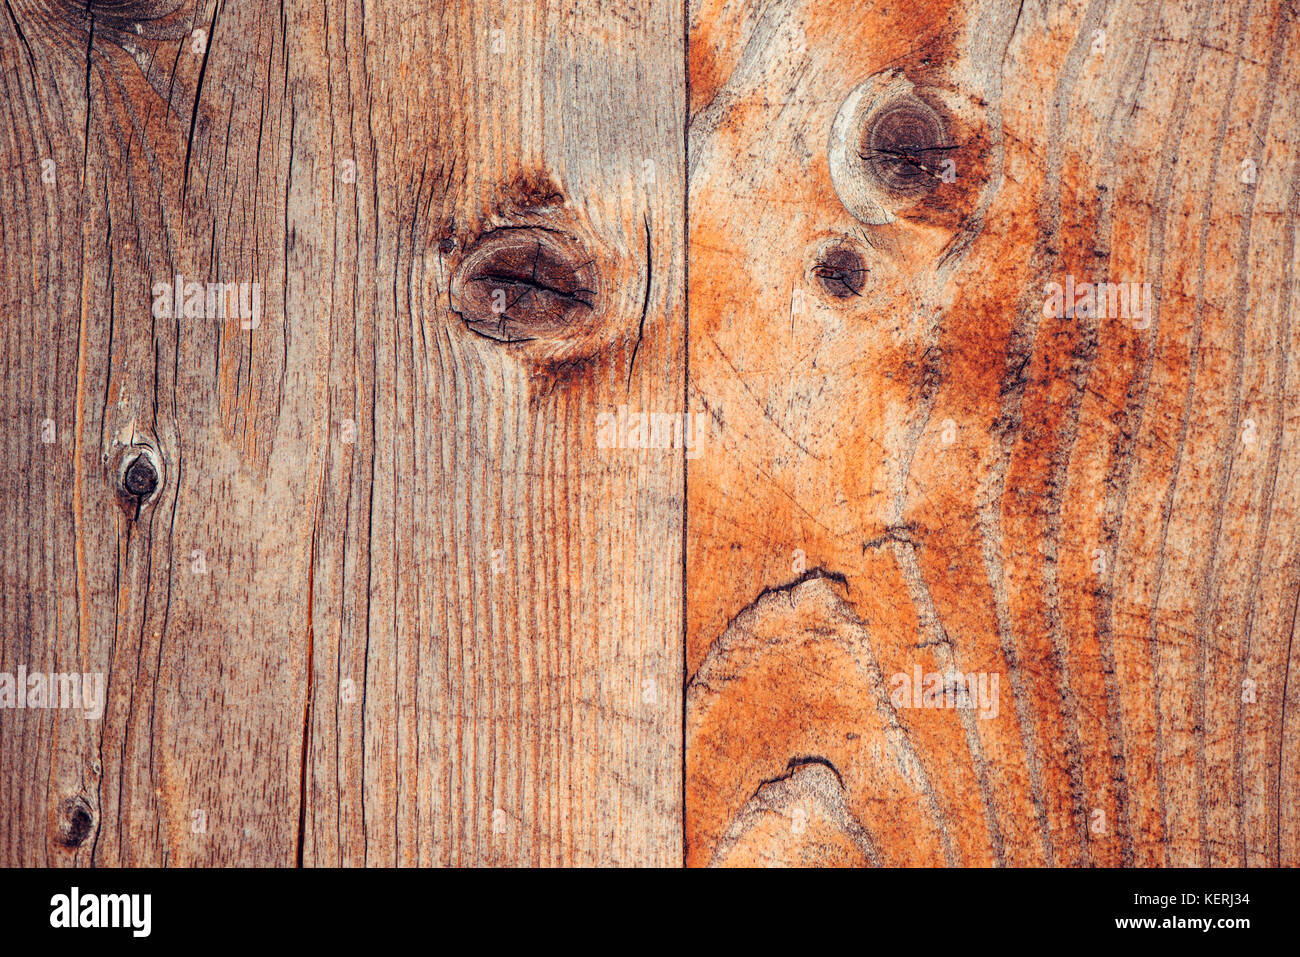 Abstract Sfondo legno, full frame listone rustico texture di legno. meteo scheda usurata superficie con segni di età. Foto Stock